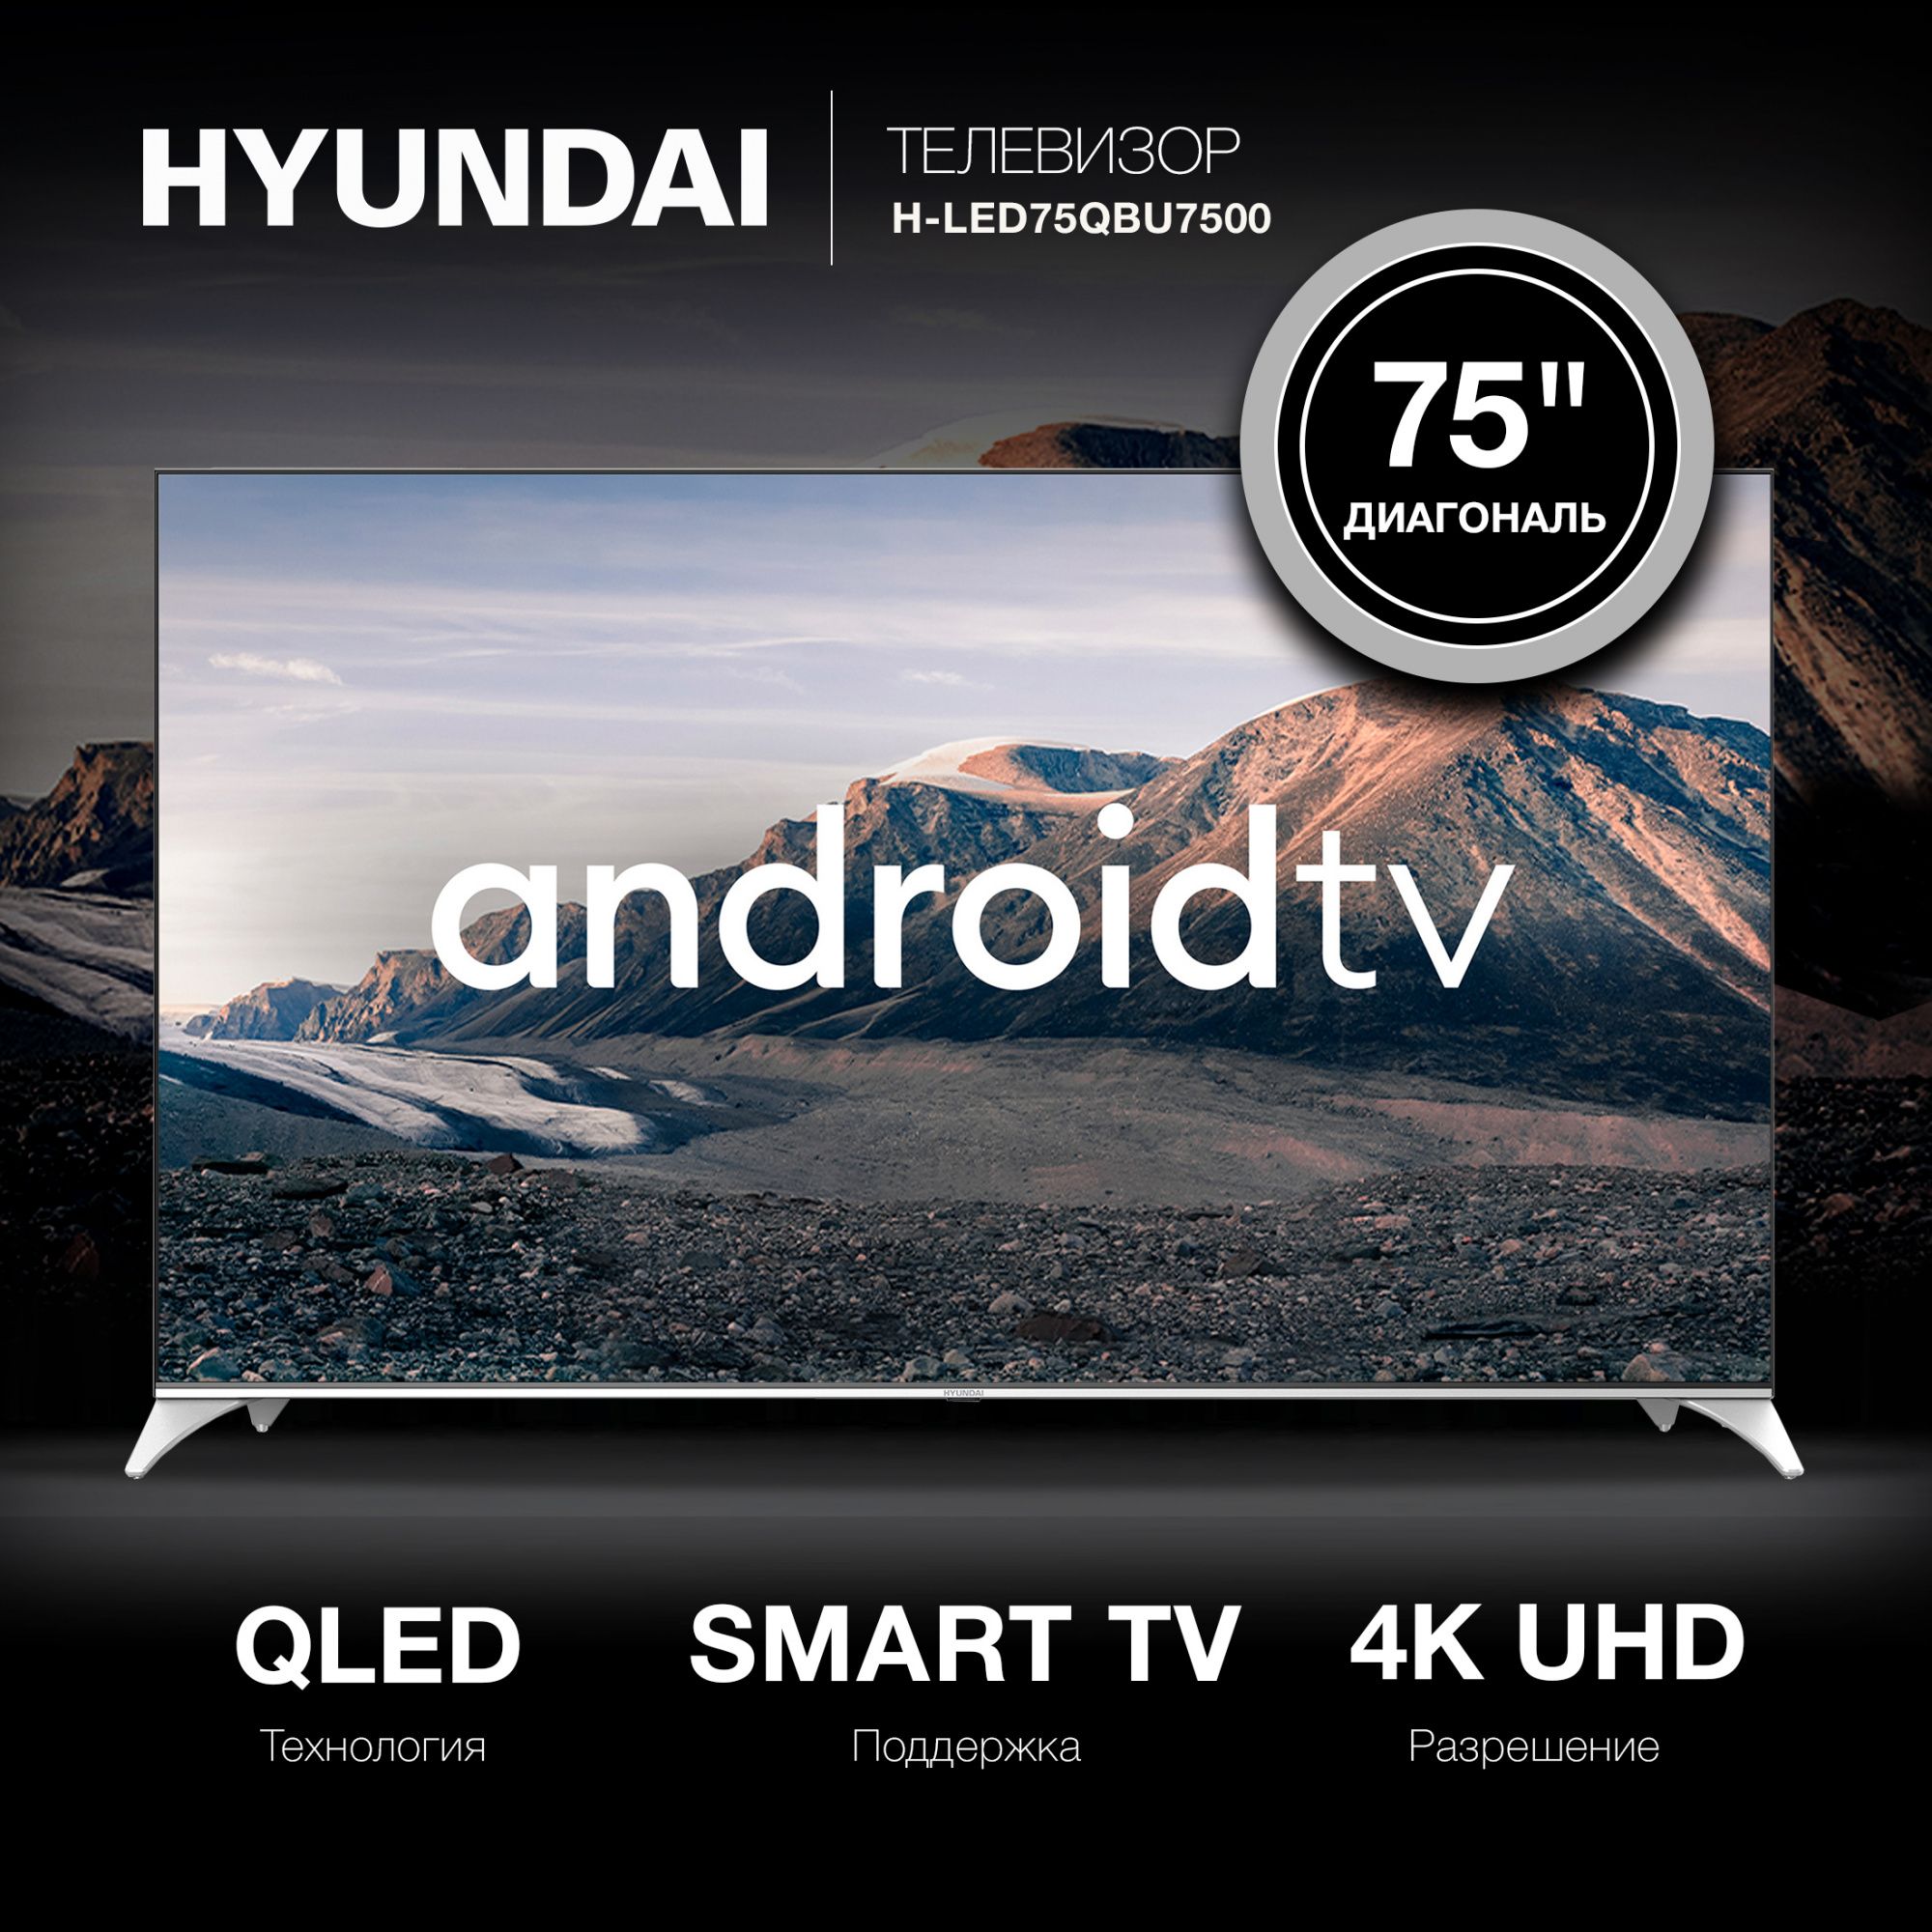 Телевизор Hyundai H-LED75QBU7500, 75″, черный— фото №2